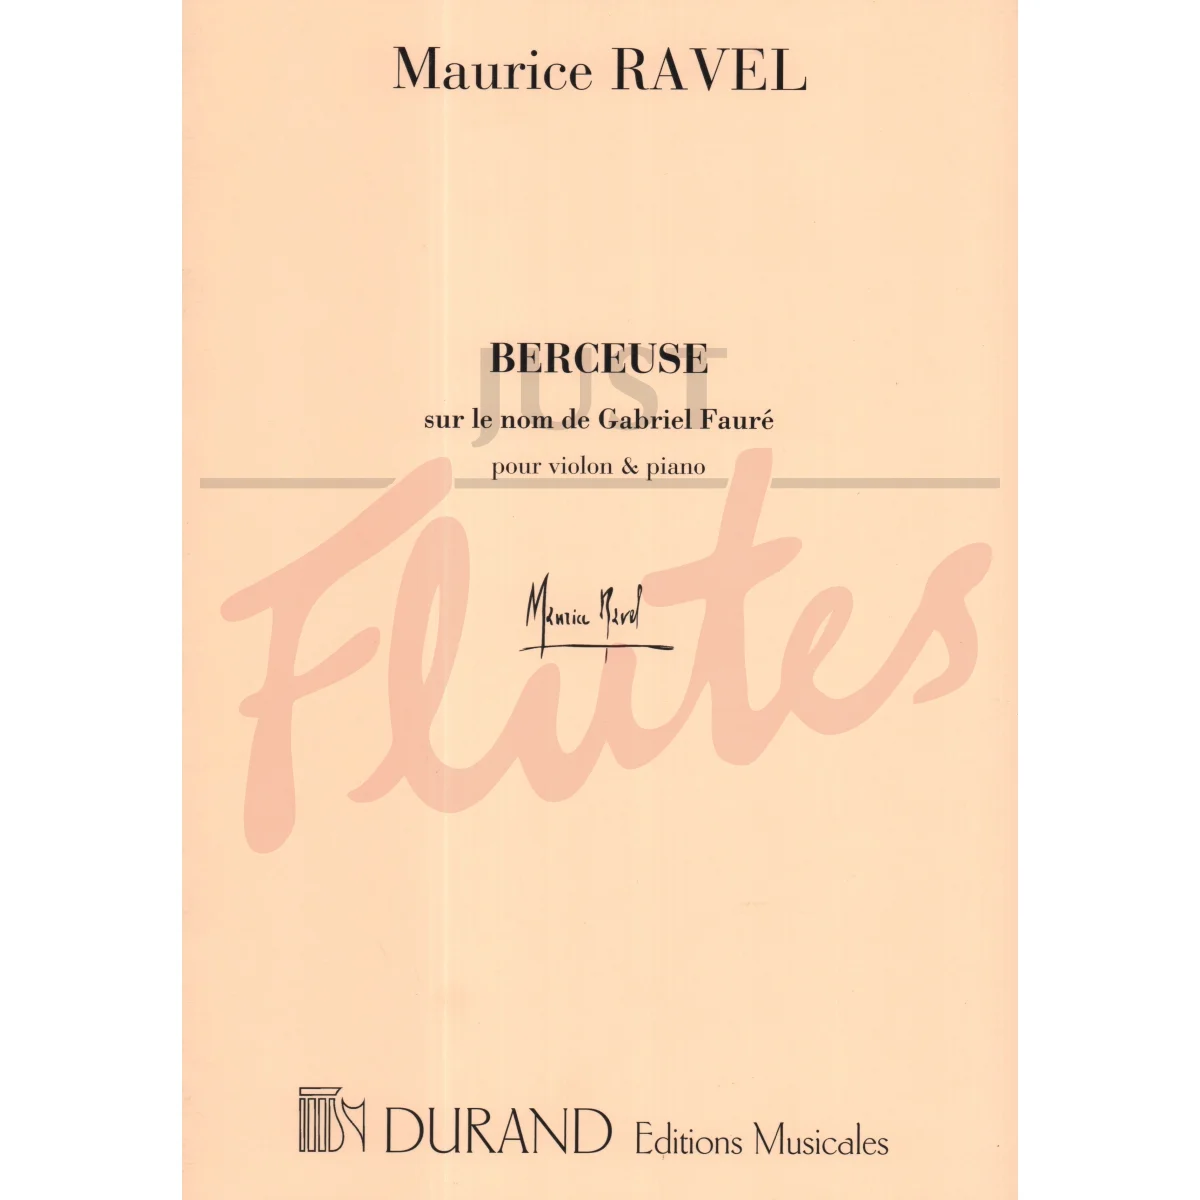 Berceuse sur le nom de Gabriel Fauré for Violin and Piano